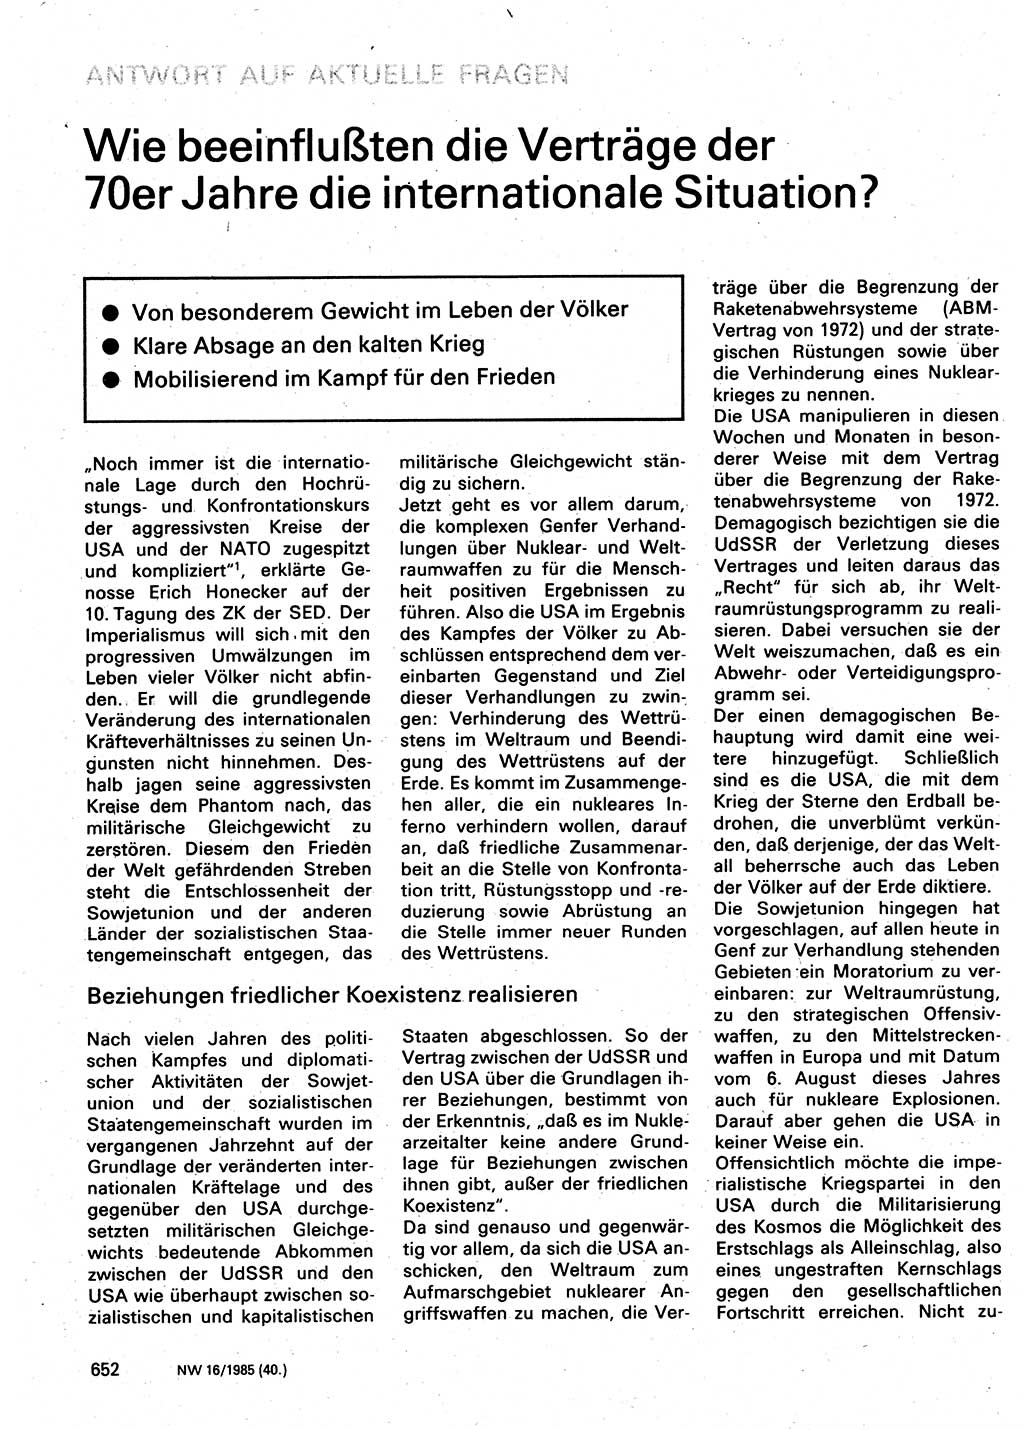 Neuer Weg (NW), Organ des Zentralkomitees (ZK) der SED (Sozialistische Einheitspartei Deutschlands) für Fragen des Parteilebens, 40. Jahrgang [Deutsche Demokratische Republik (DDR)] 1985, Seite 652 (NW ZK SED DDR 1985, S. 652)